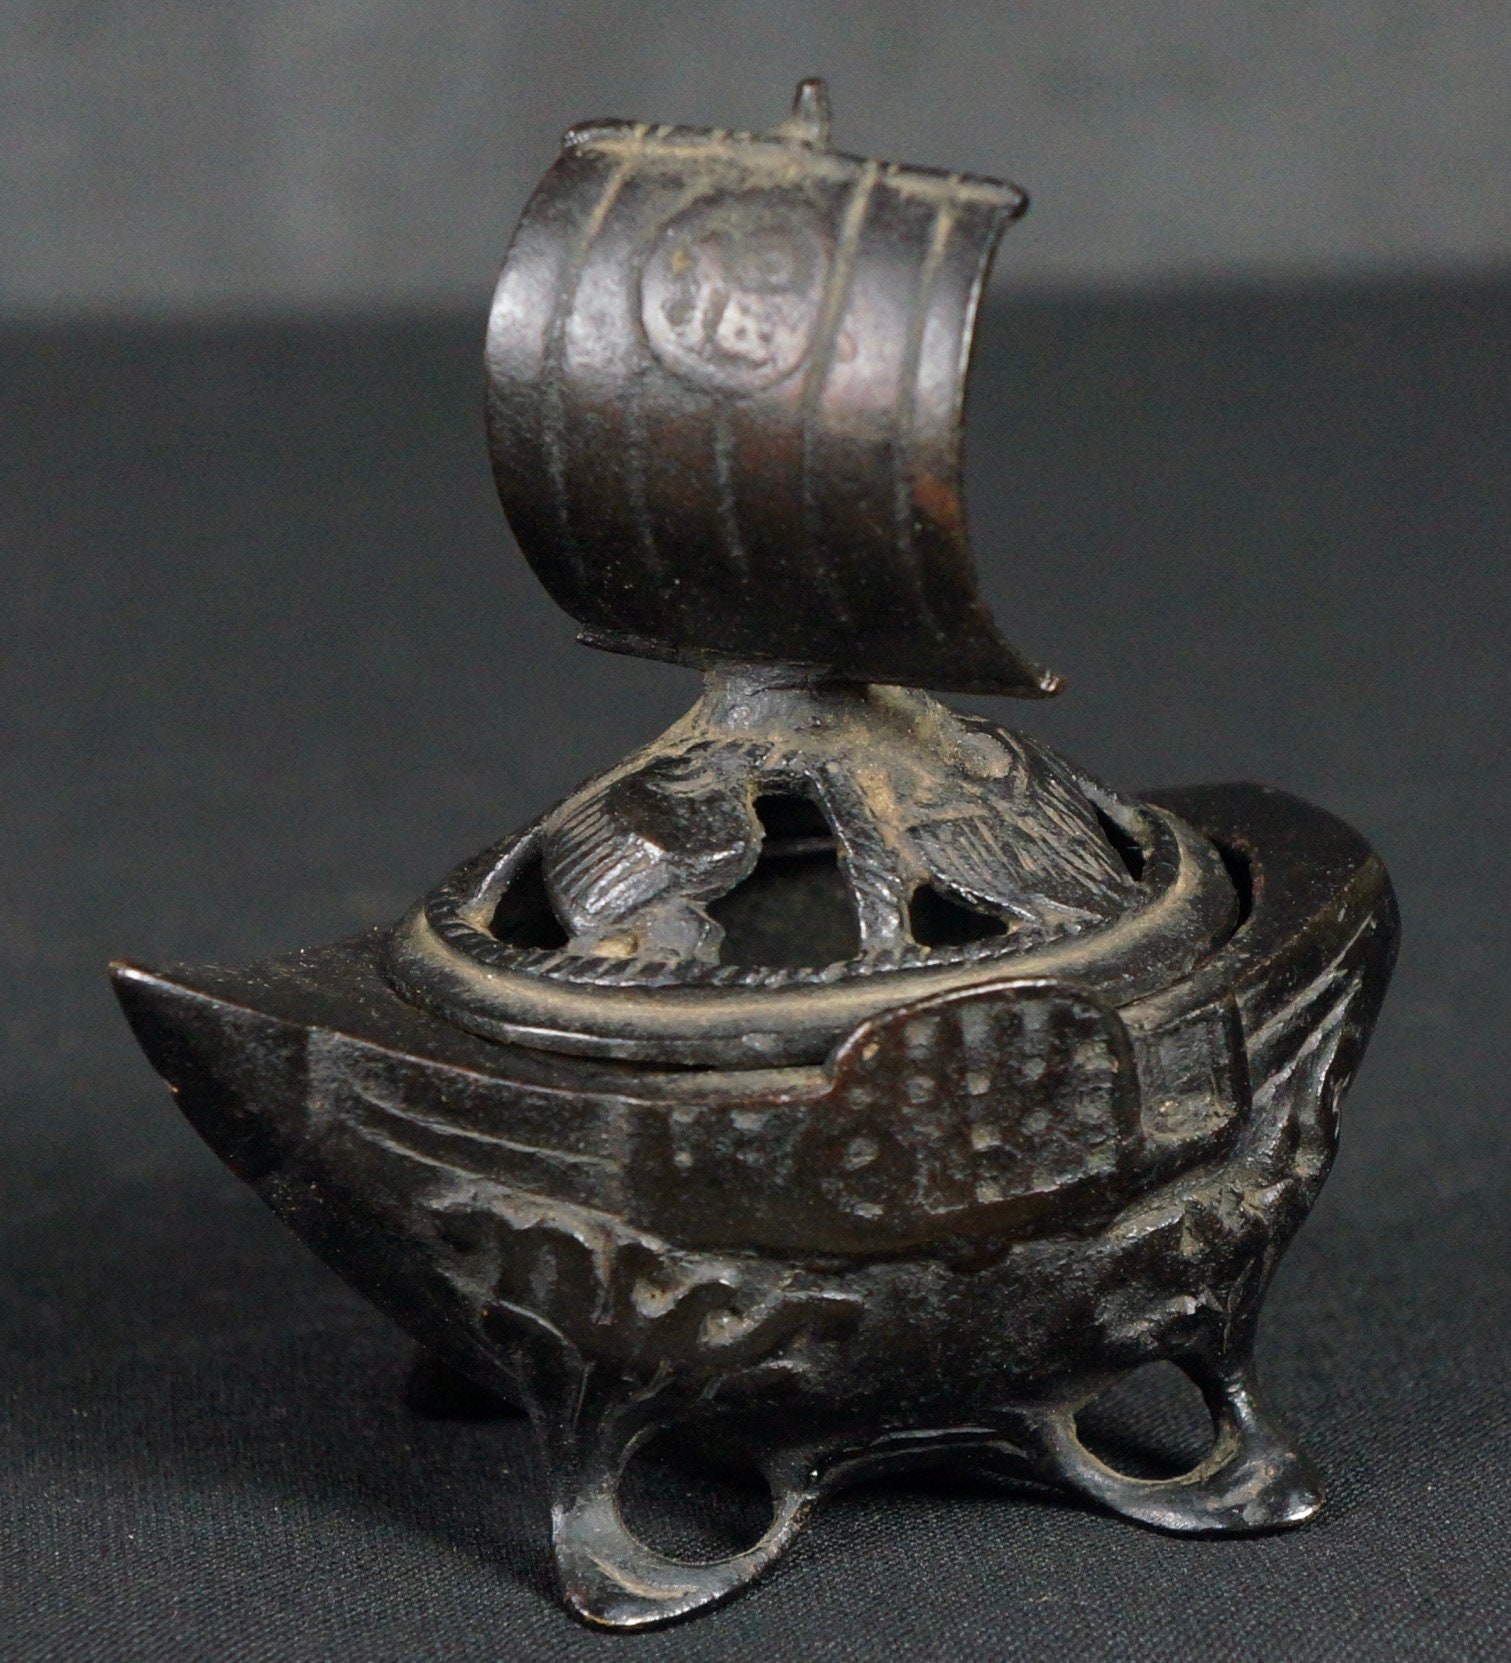 Antique Japan bronze Takarabune censer 1800s lost wax craft